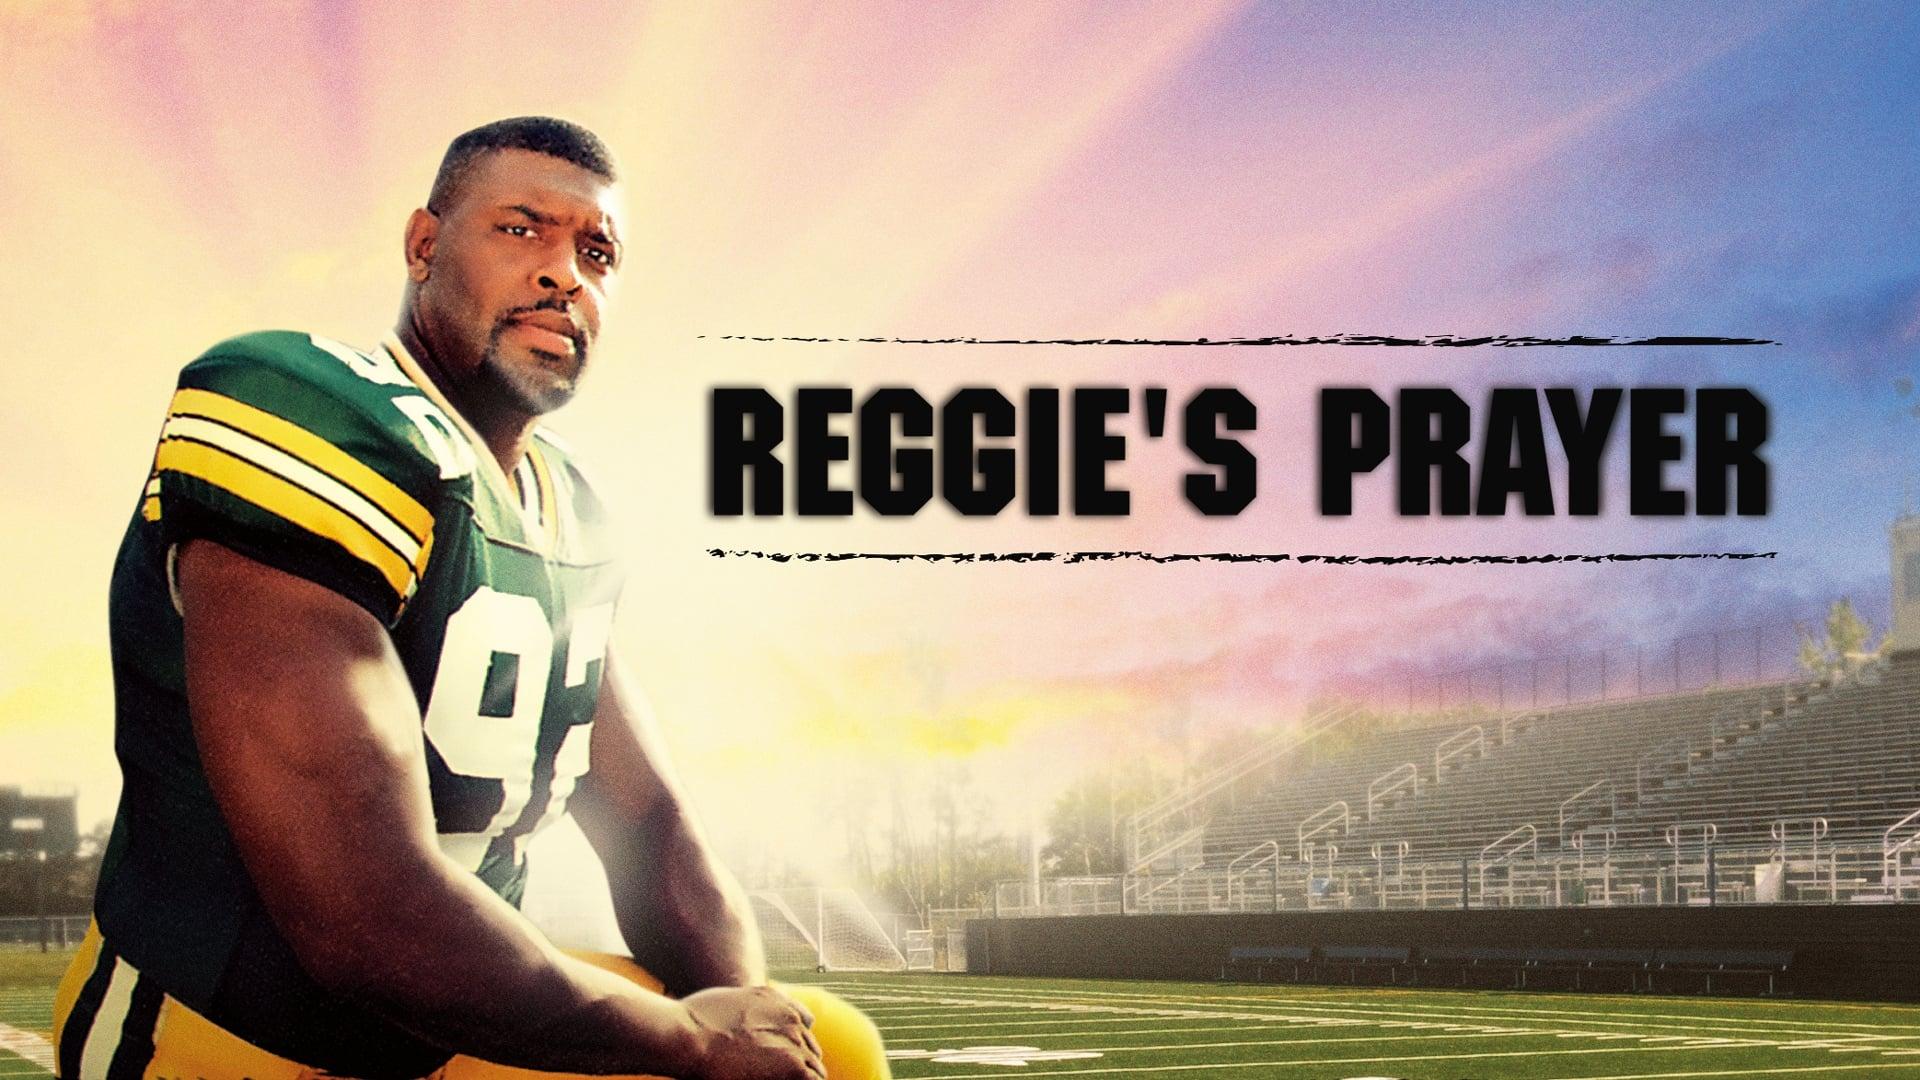 Reggie's Prayer backdrop